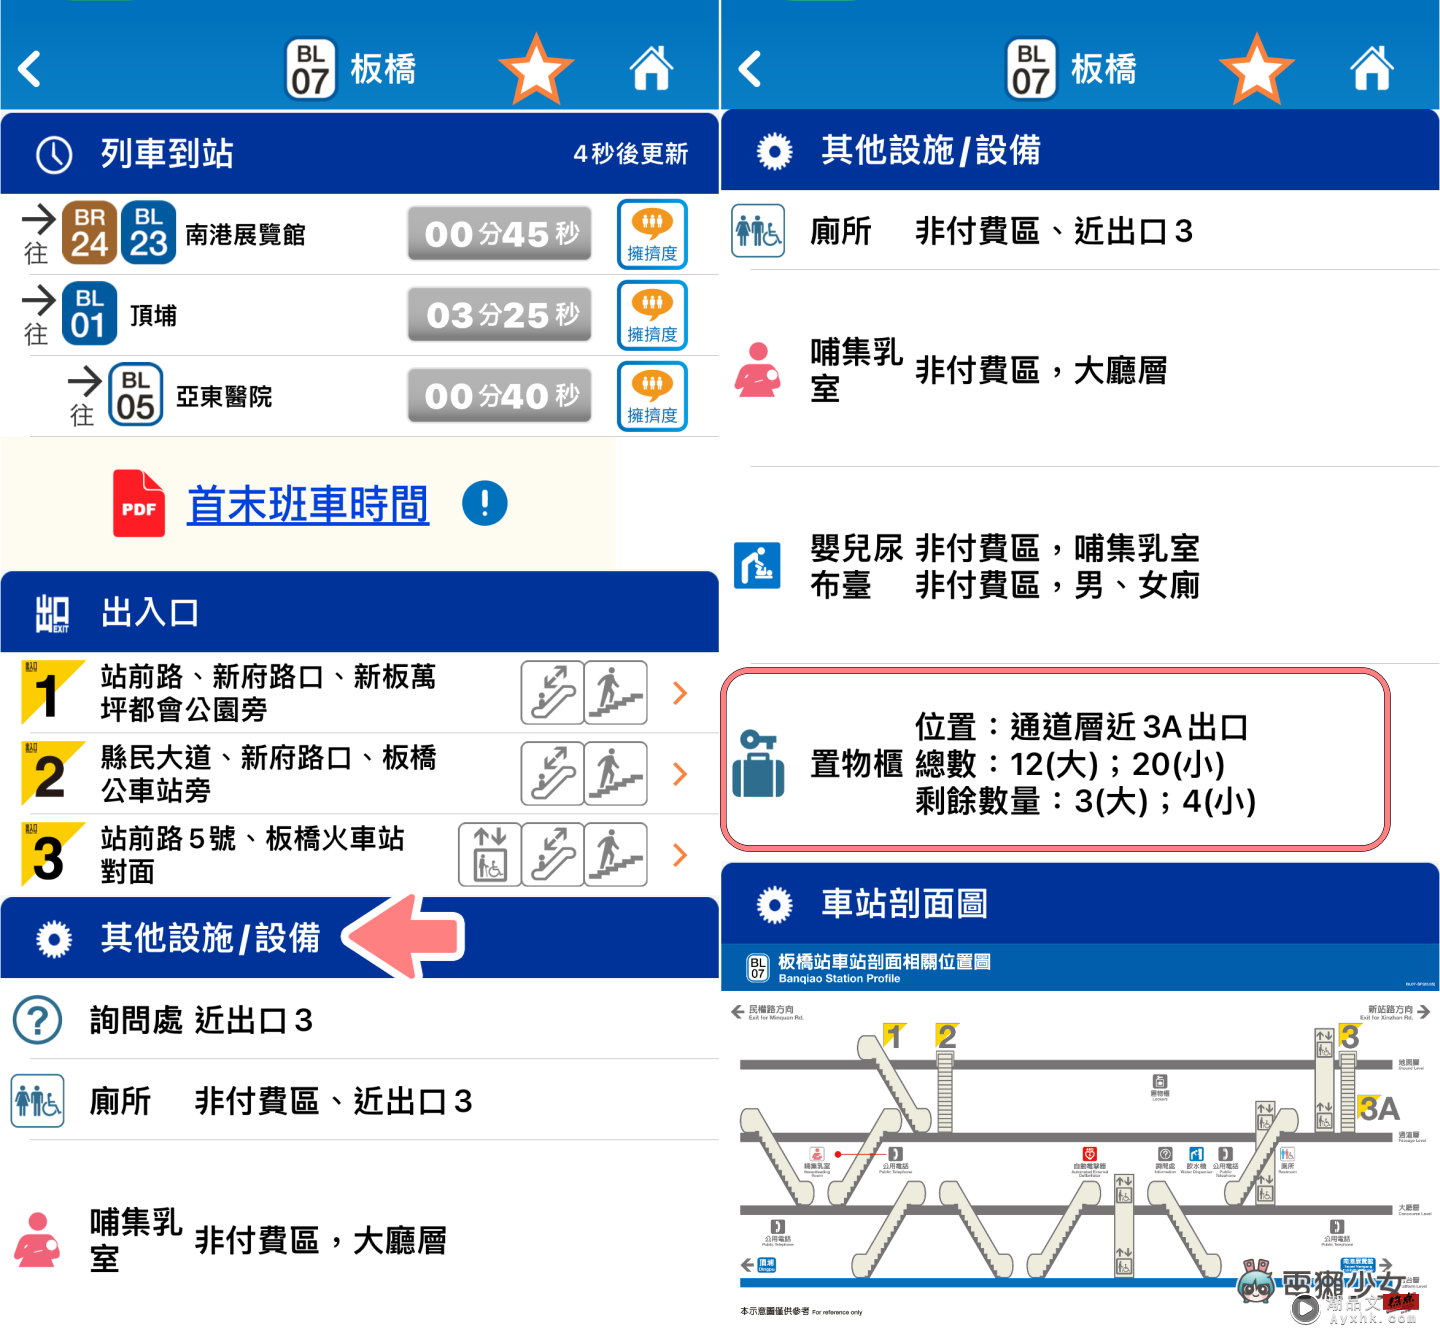 超方便！‘ 台北捷运 GO ’可查询列车拥挤程度、各站置物柜剩余数量、即时显示到站时间 数码科技 图3张